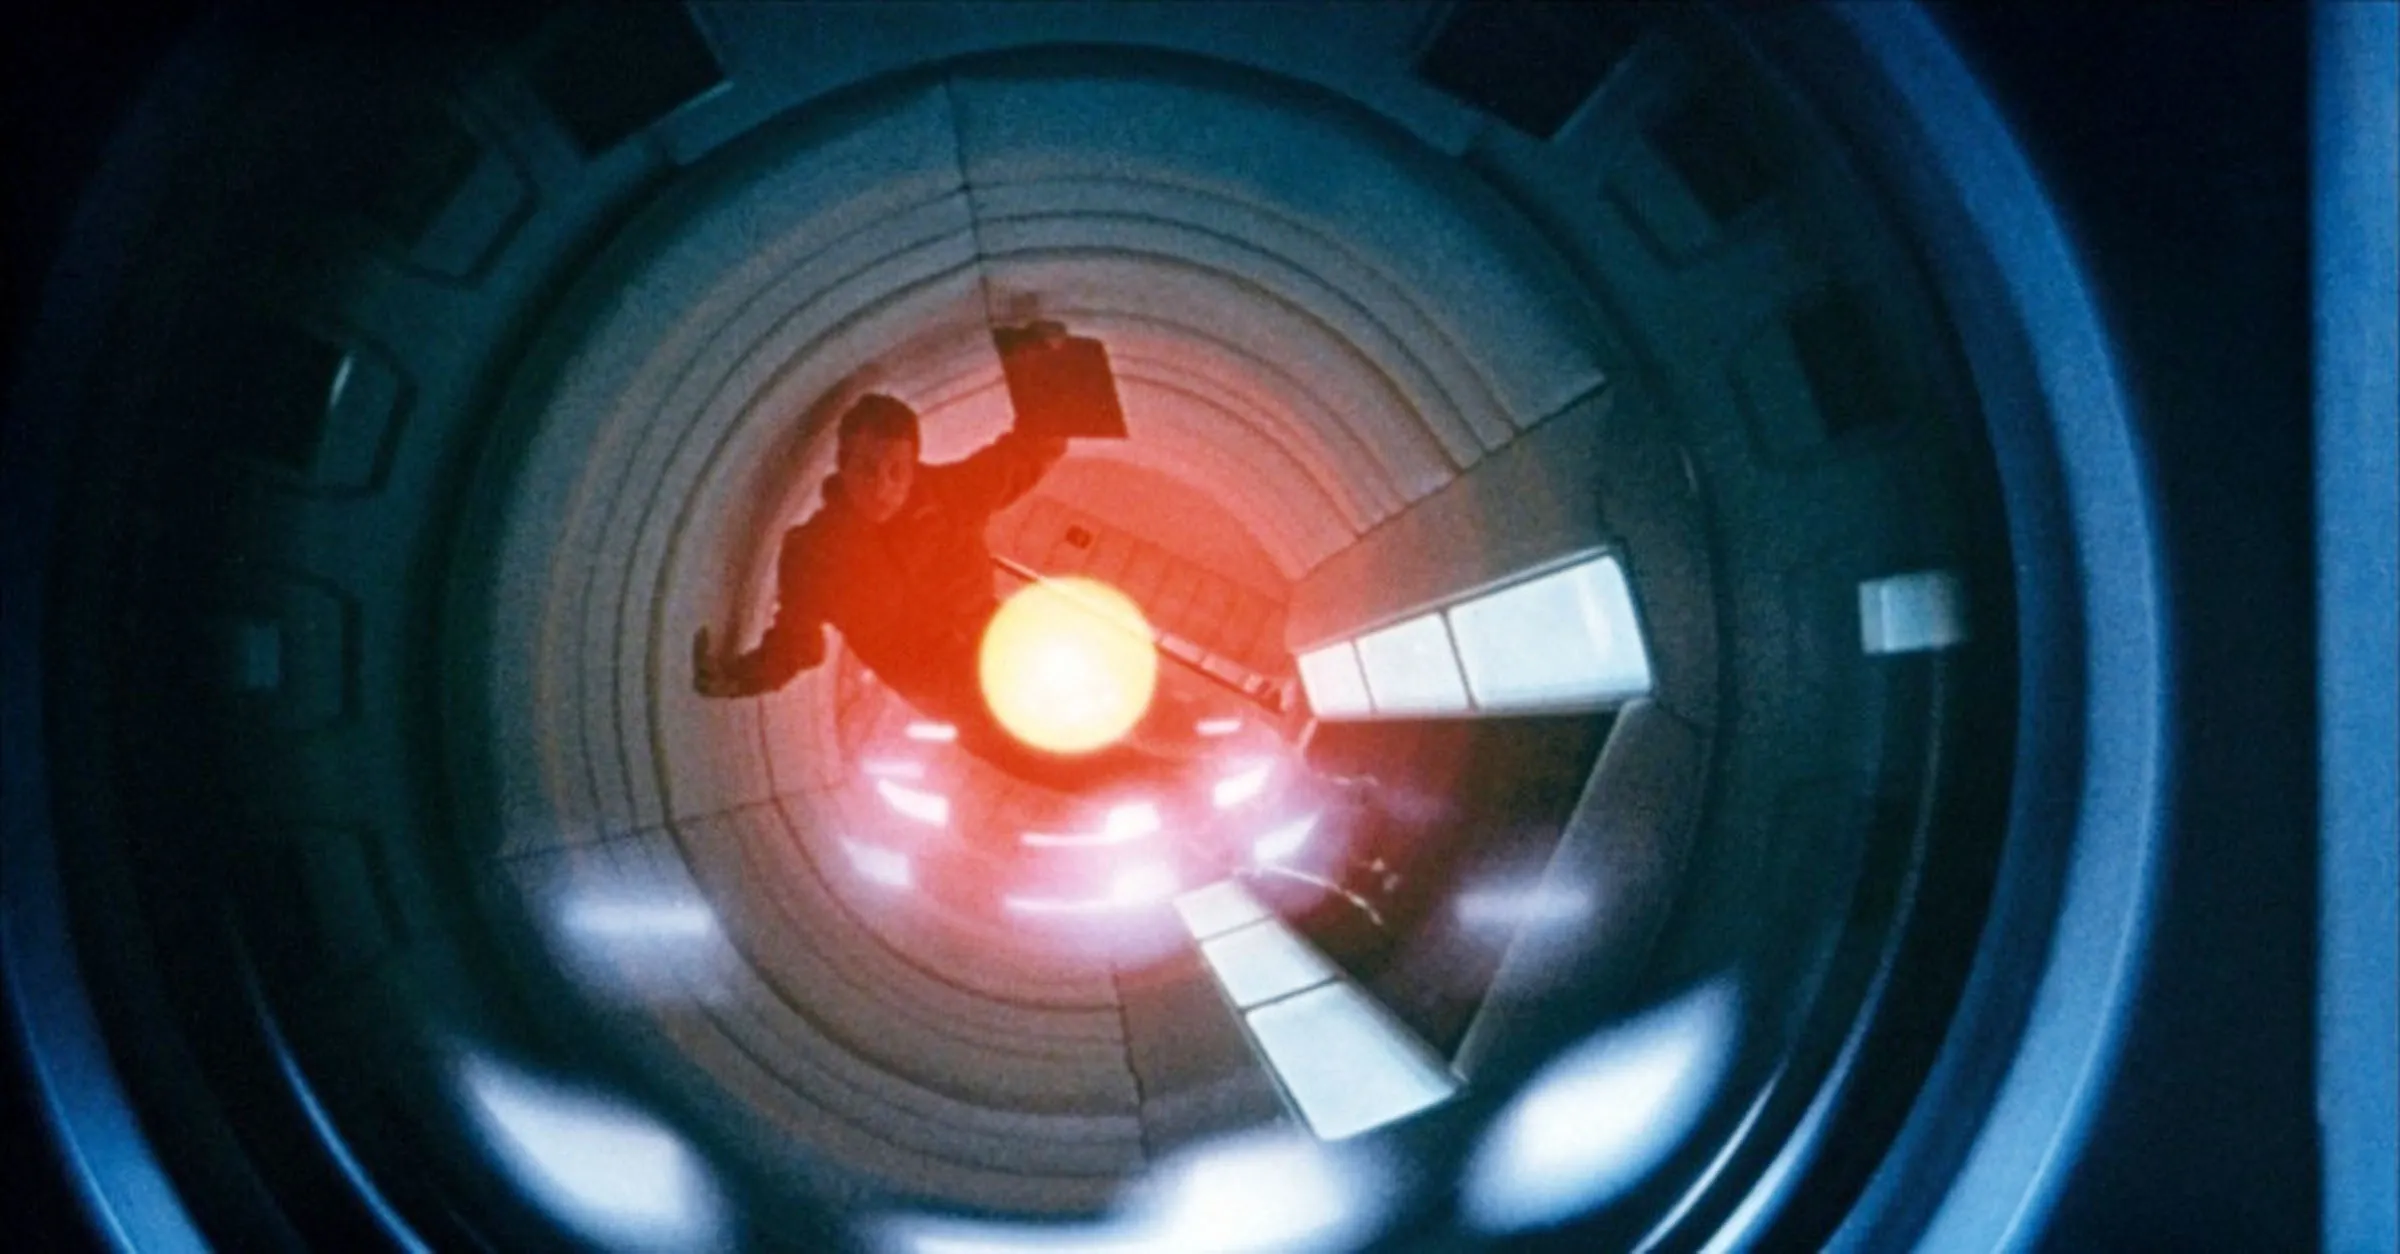 Cena do filme "2001: Space Odissey". Hal e astronauta (diretor Stanley Kubrick). Imagem: Divulgação.